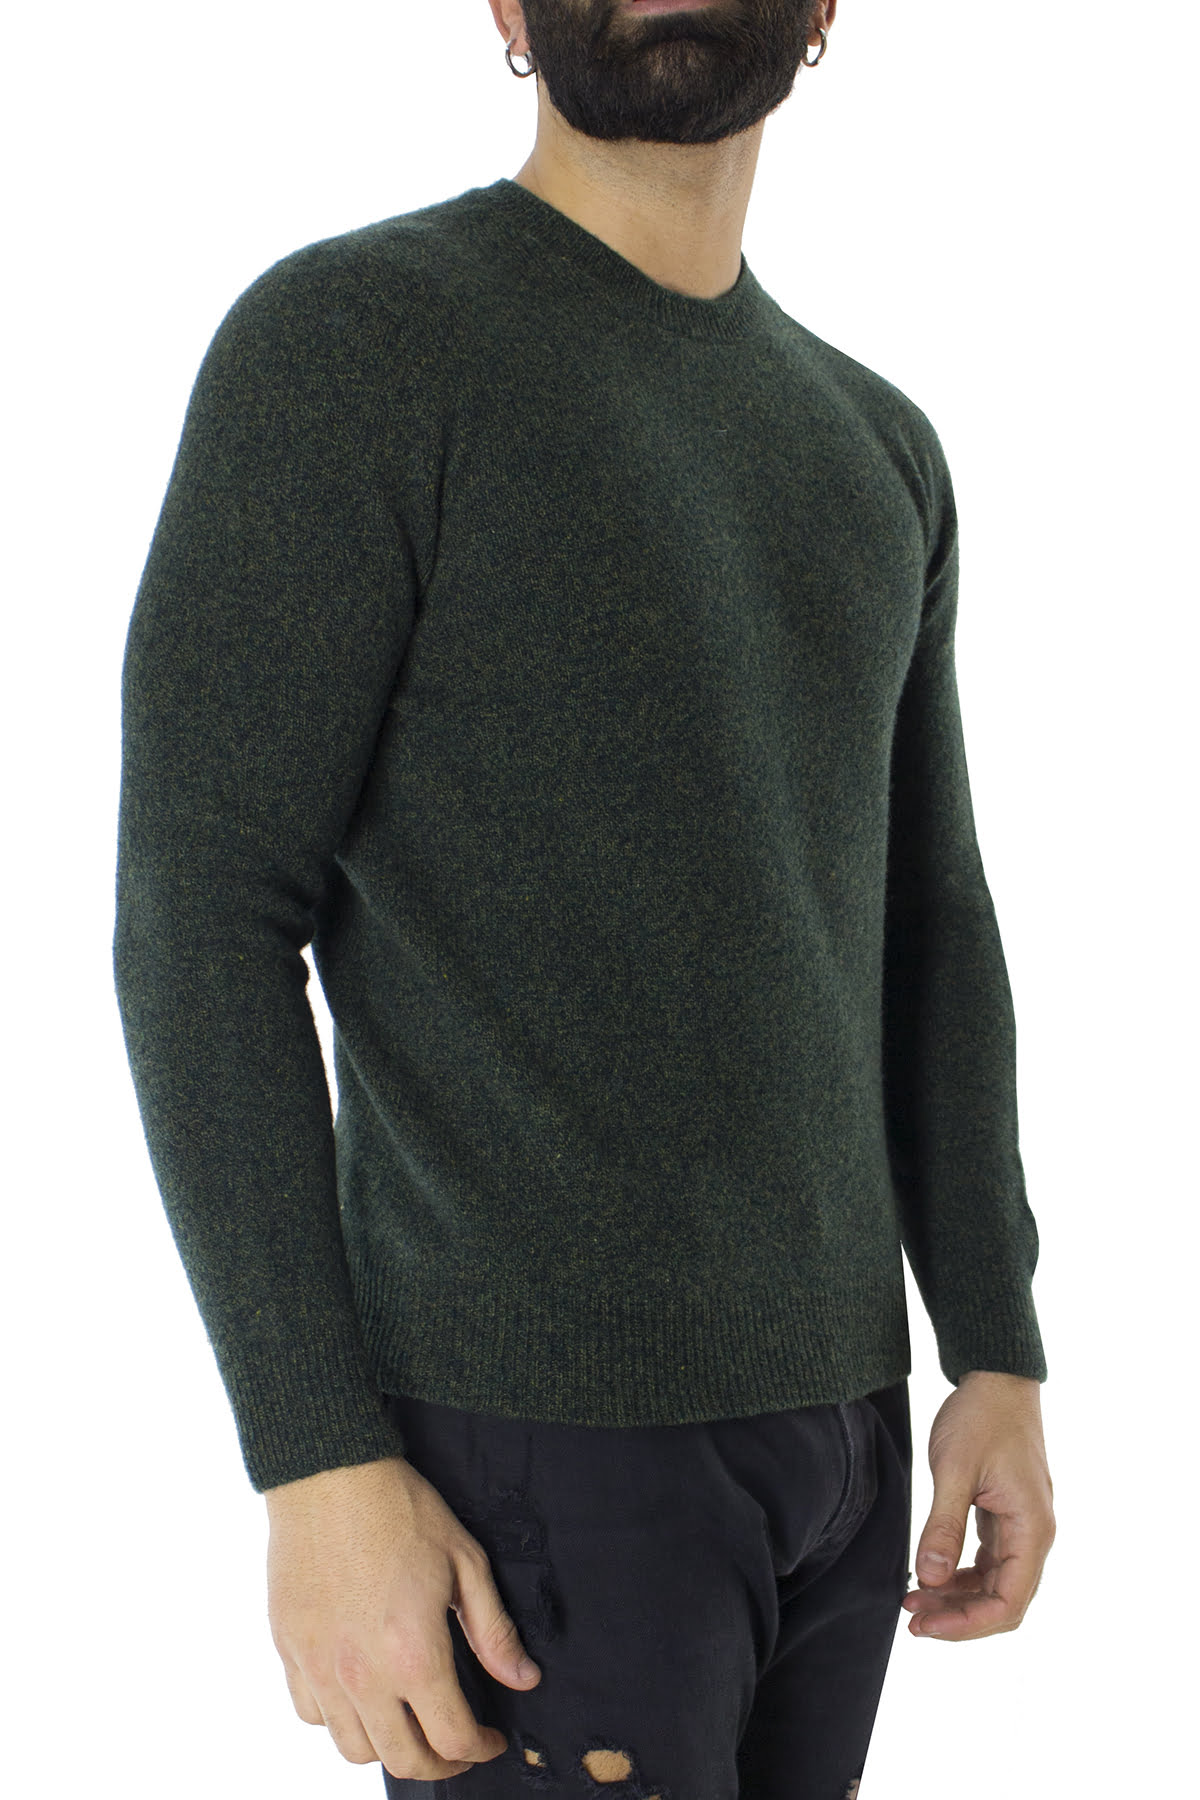 Maglione uomo Girocollo verde effetto melange senape in lana 100% slim fit